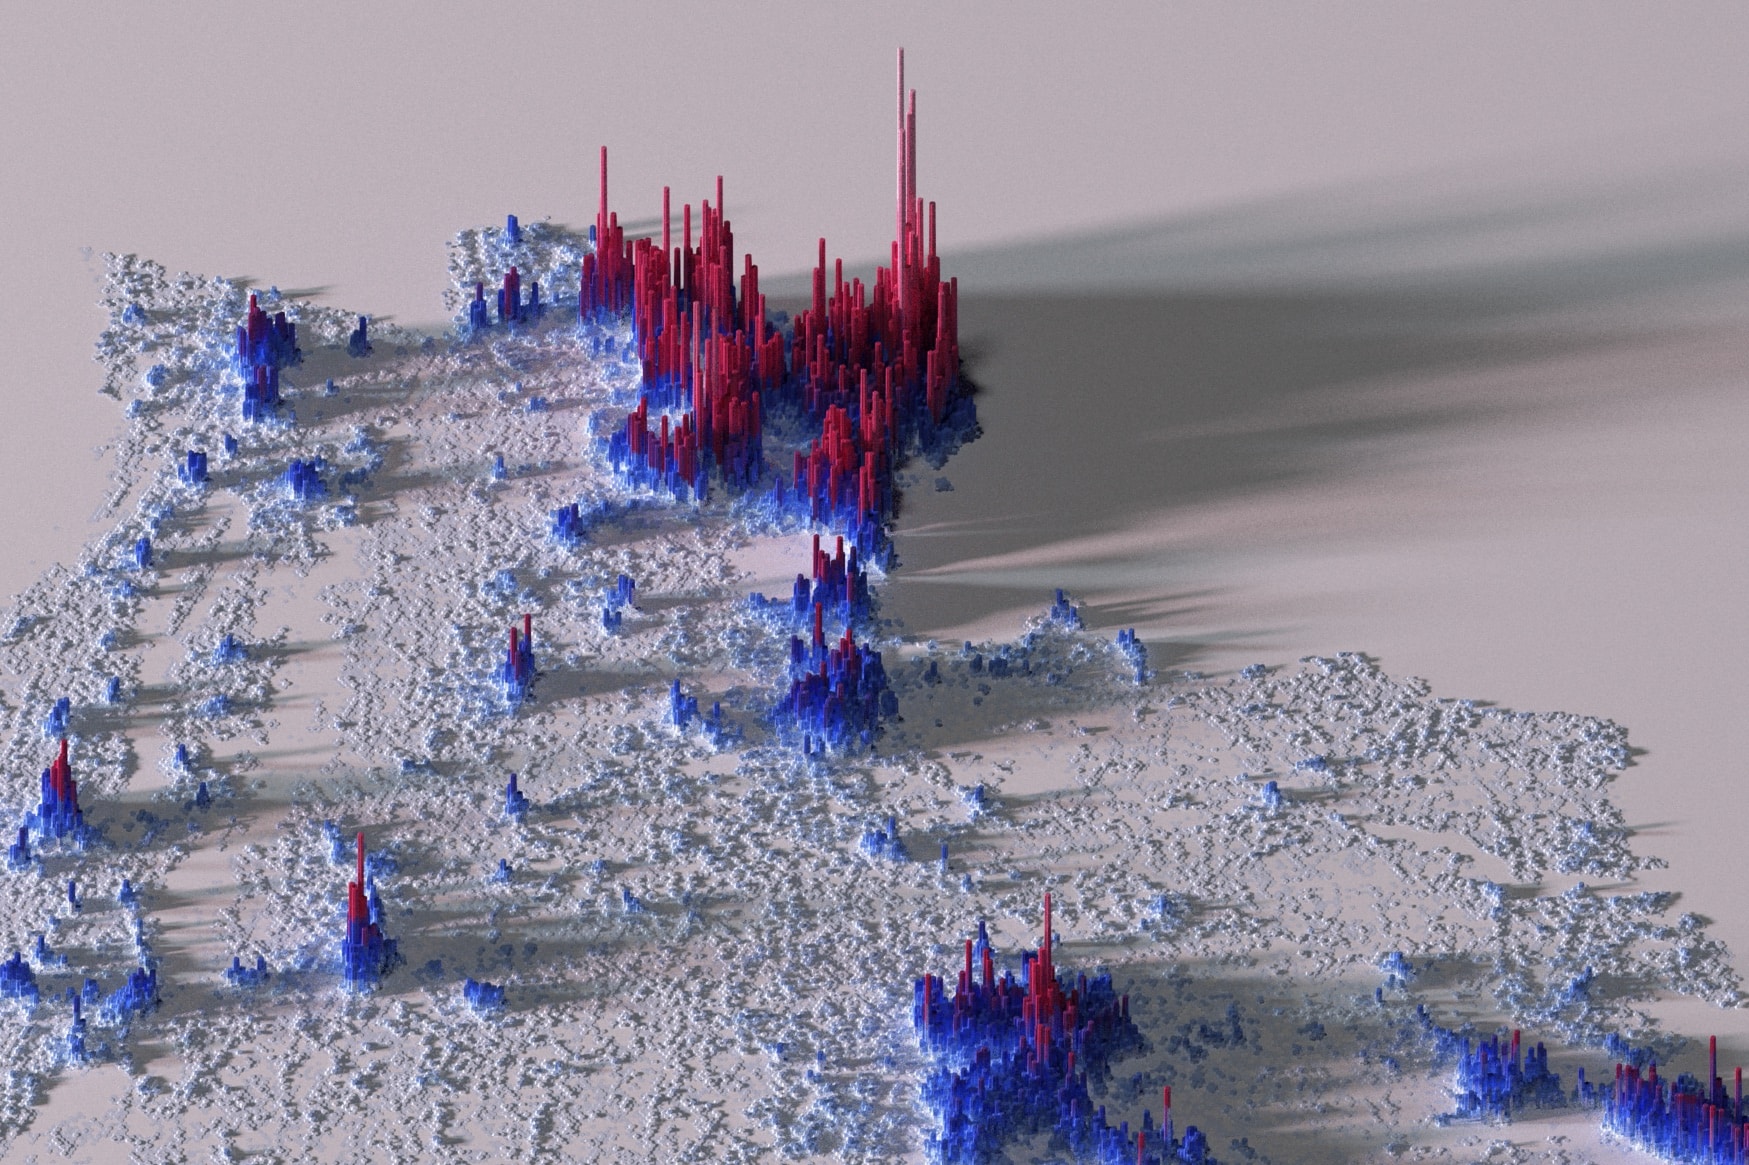 Population Density Maps by Spencer Schien